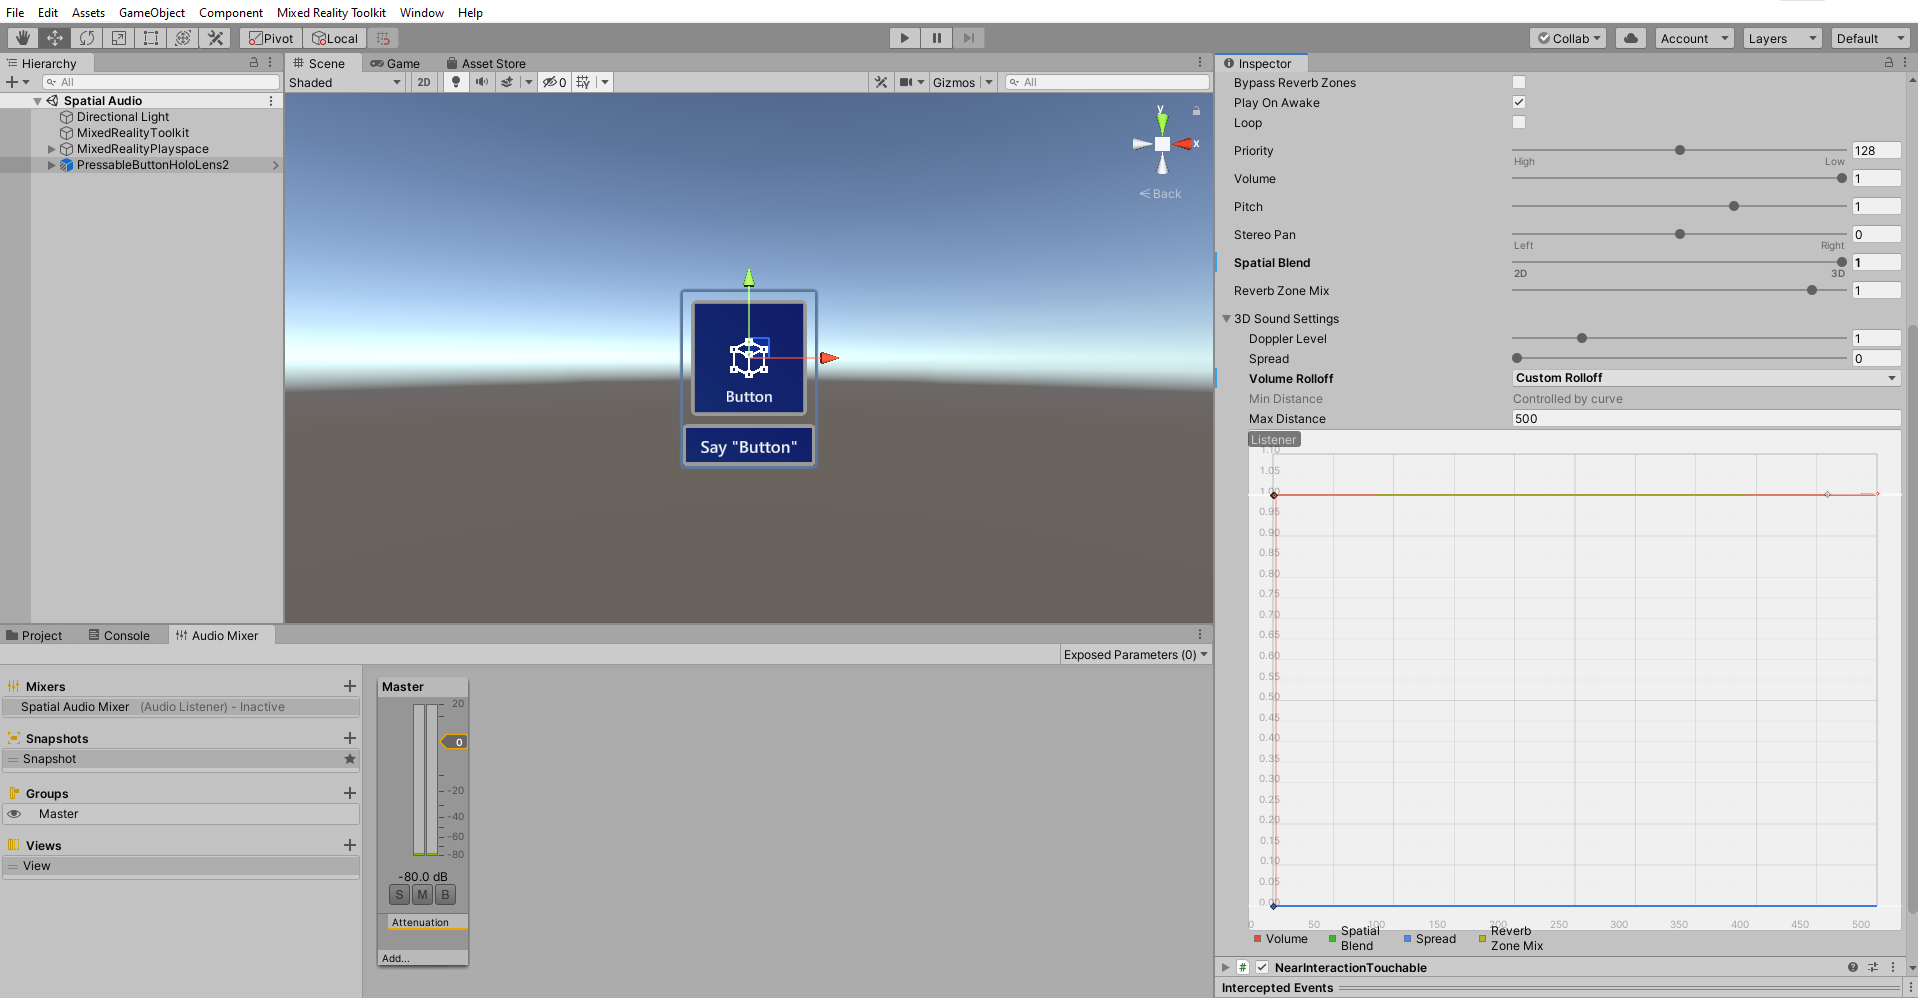 Screenshot of Button 3D sound settings.